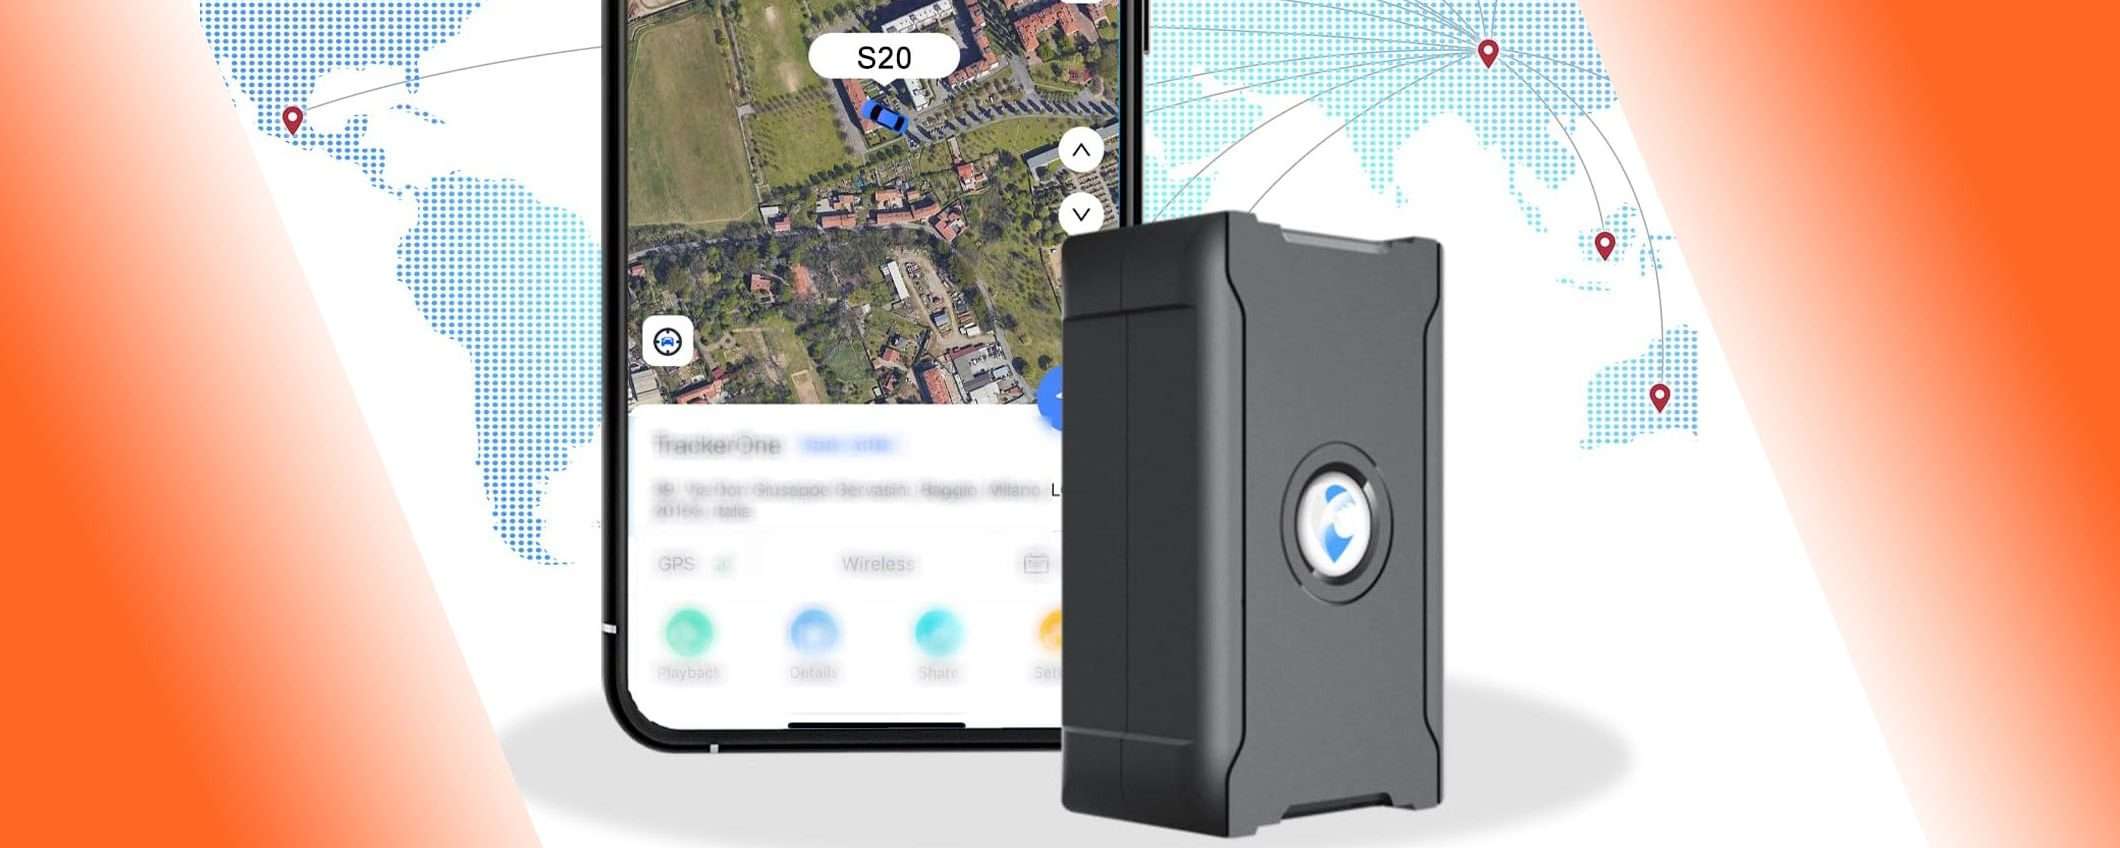 Localizzatore GPS per auto a 5€: attiva il DOPPIO SCONTO